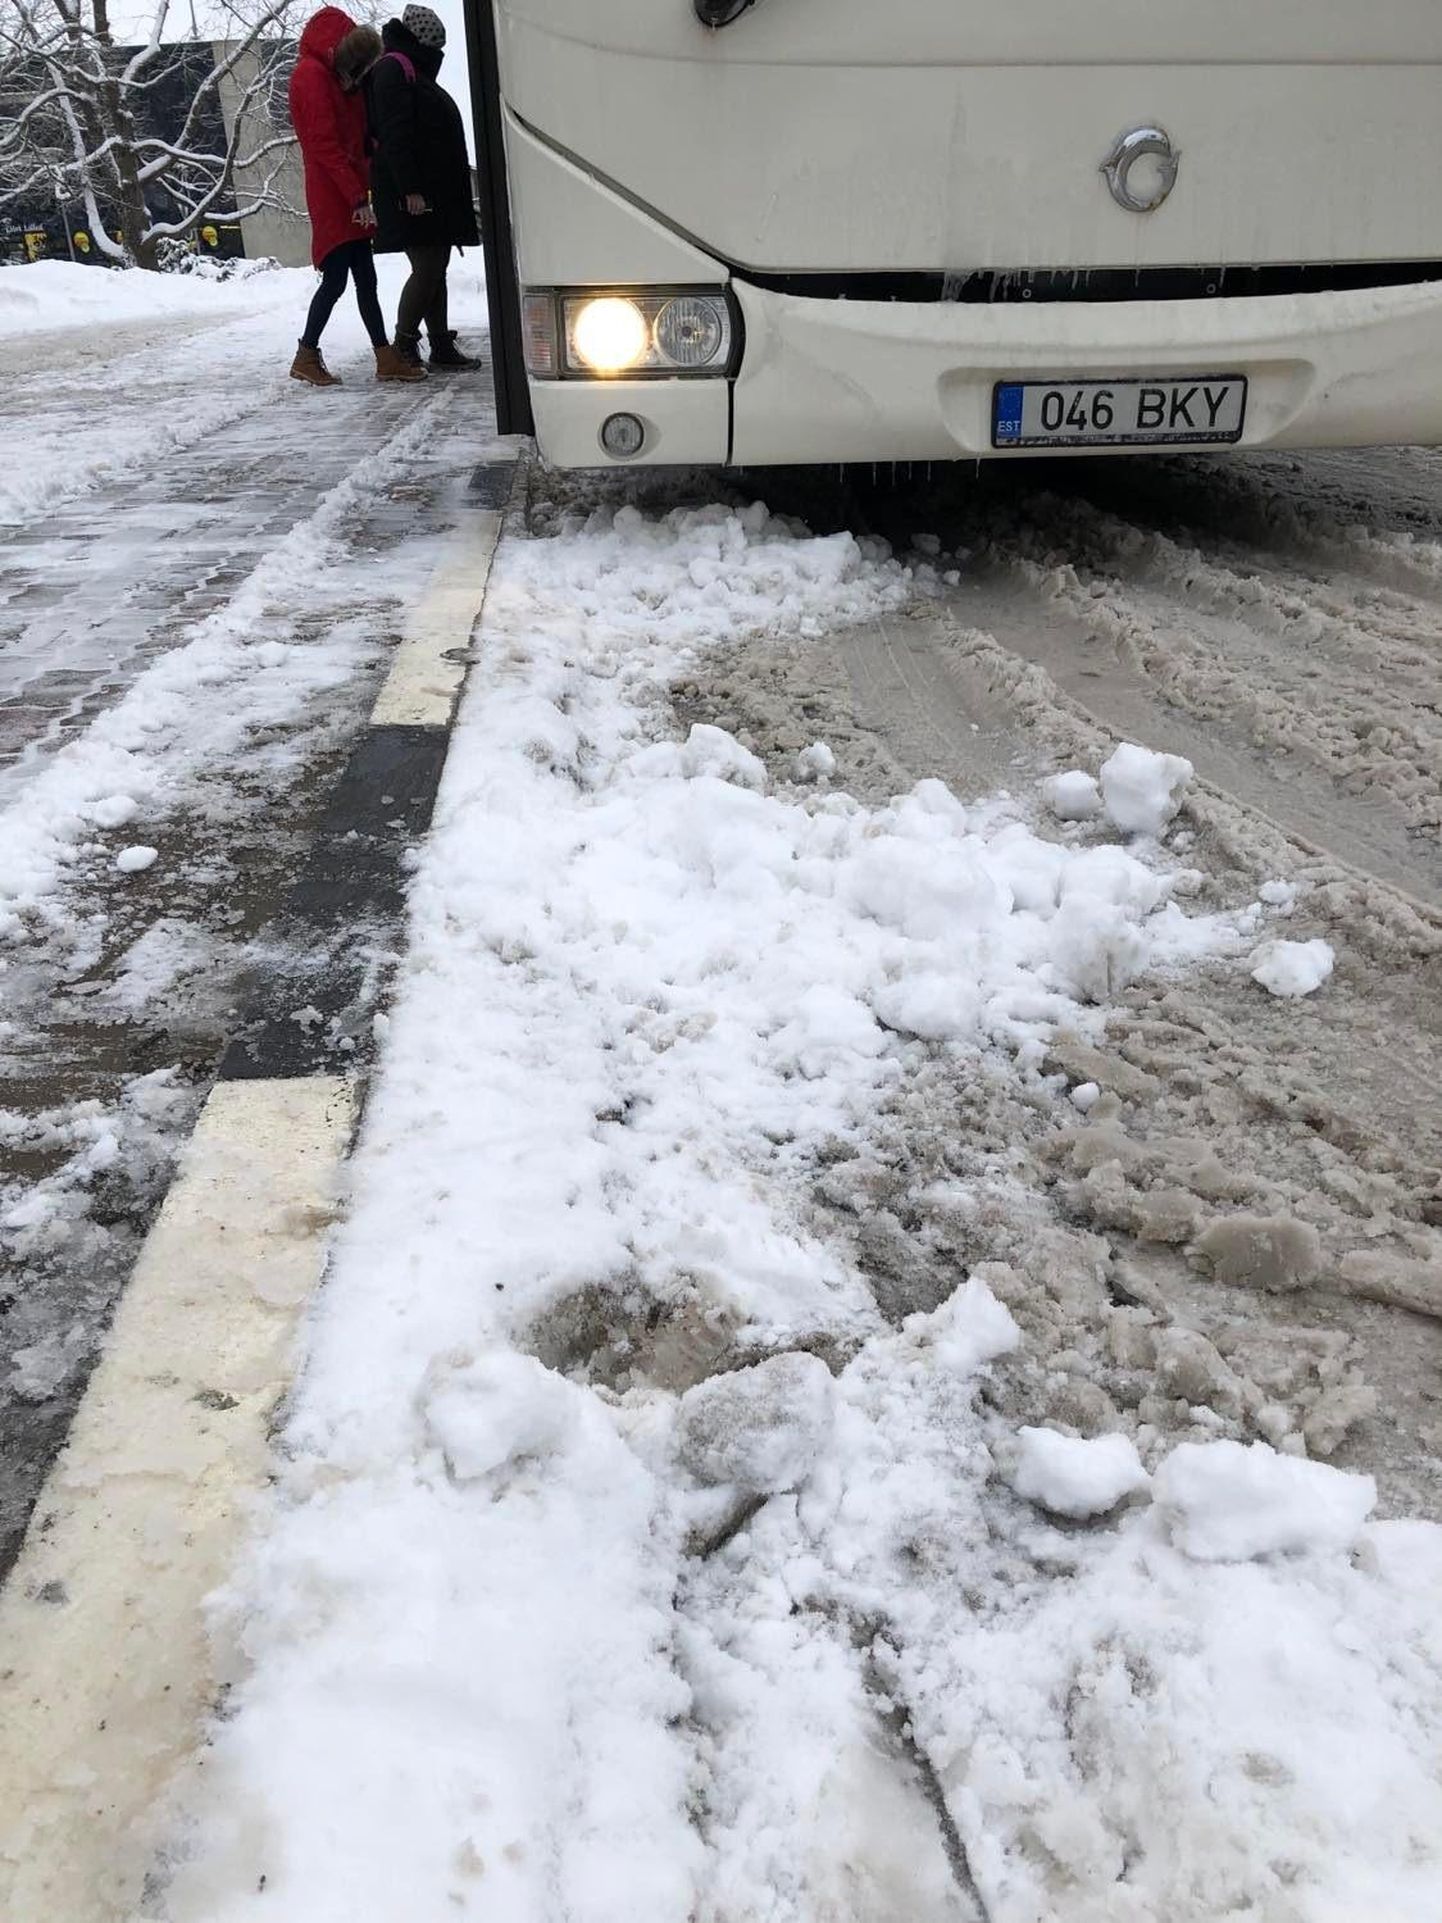 Töömehed loobivad ooteplatvormilt lume enamasti busside rataste alla, kus see segab perrooni lähedale sõitu ning peagi ohtlikeks konarusteks ja jääks lihvitakse.